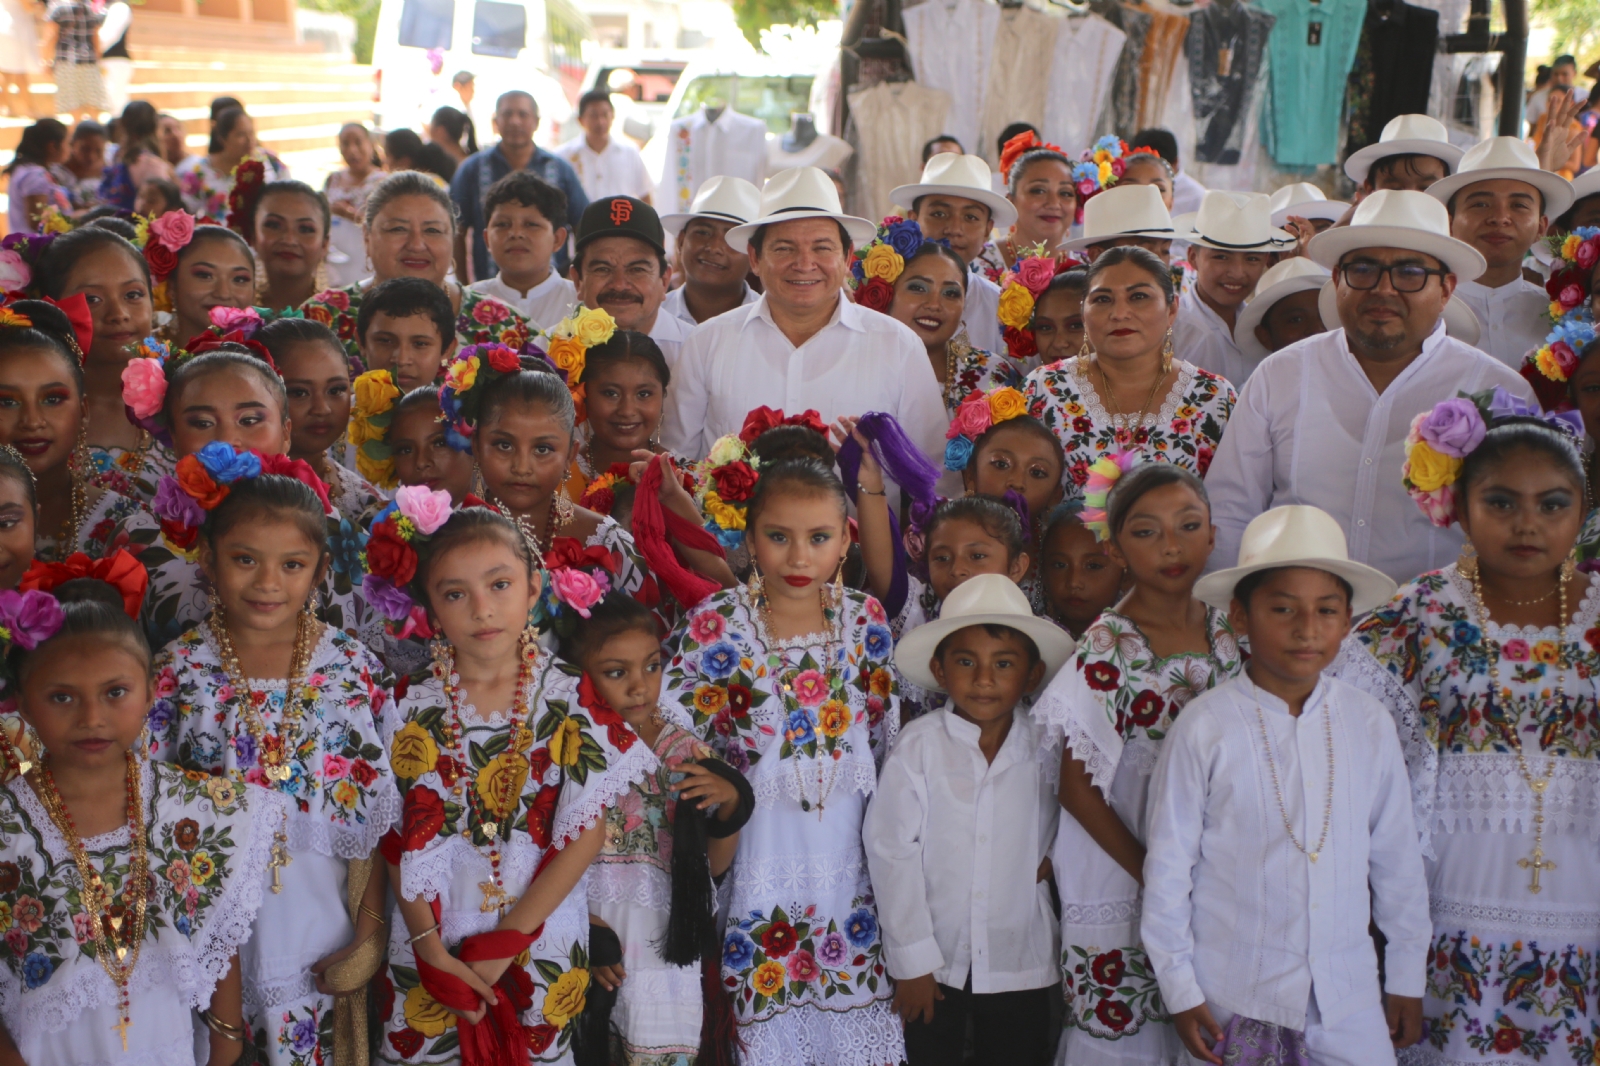 El apoyo a las comunidades originarias es esencial para lograr un Yucatán más inclusivo y más justo.